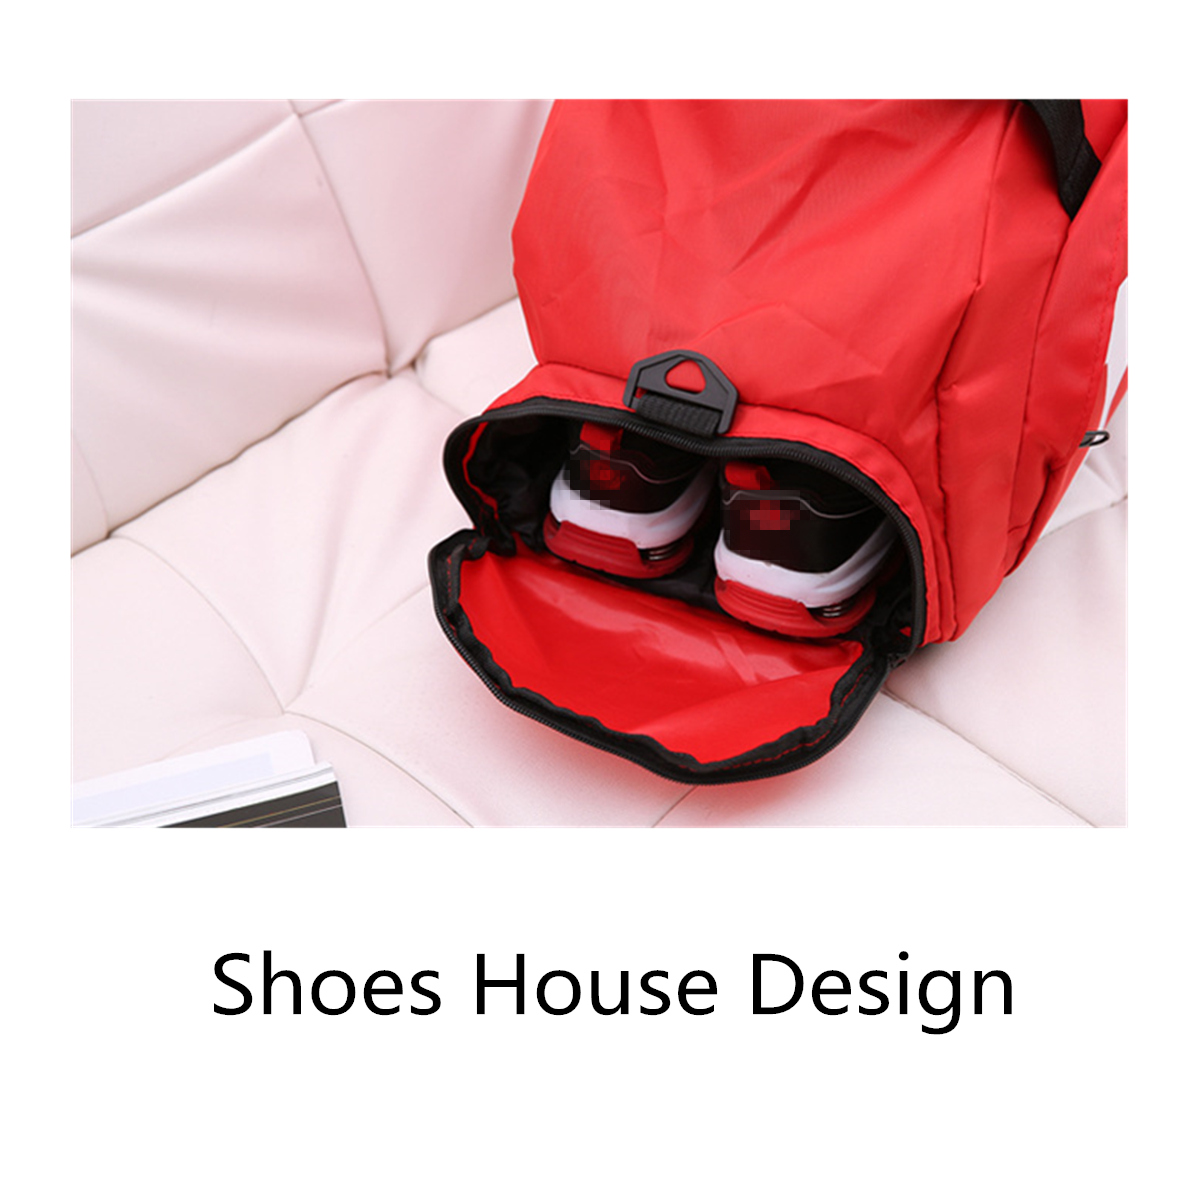 17L-Sports-Gym-Backpack-Fitness-Outdoor-Camping-Travel-Shoulder-Bag-Handbag-Shoe-Bag-1352205-7